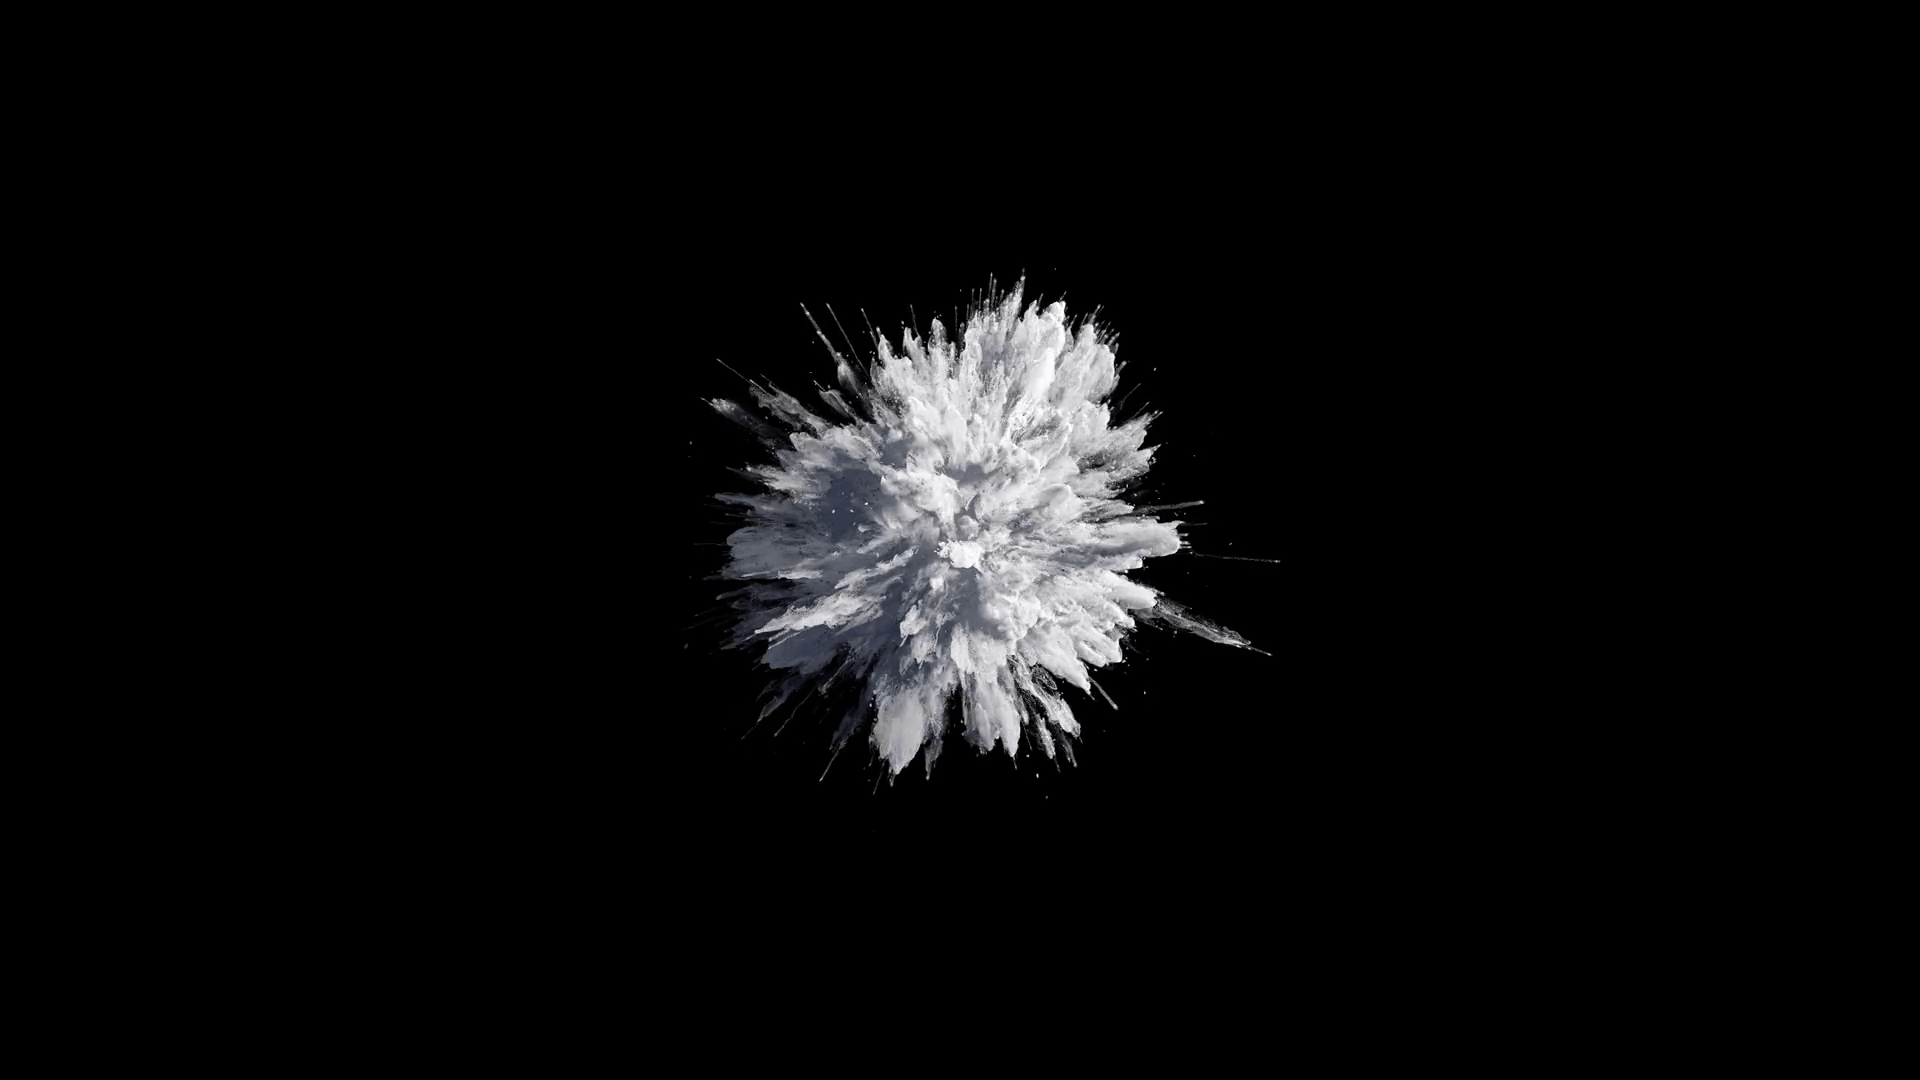 Cg animation of white powder explosion on black background. Slow